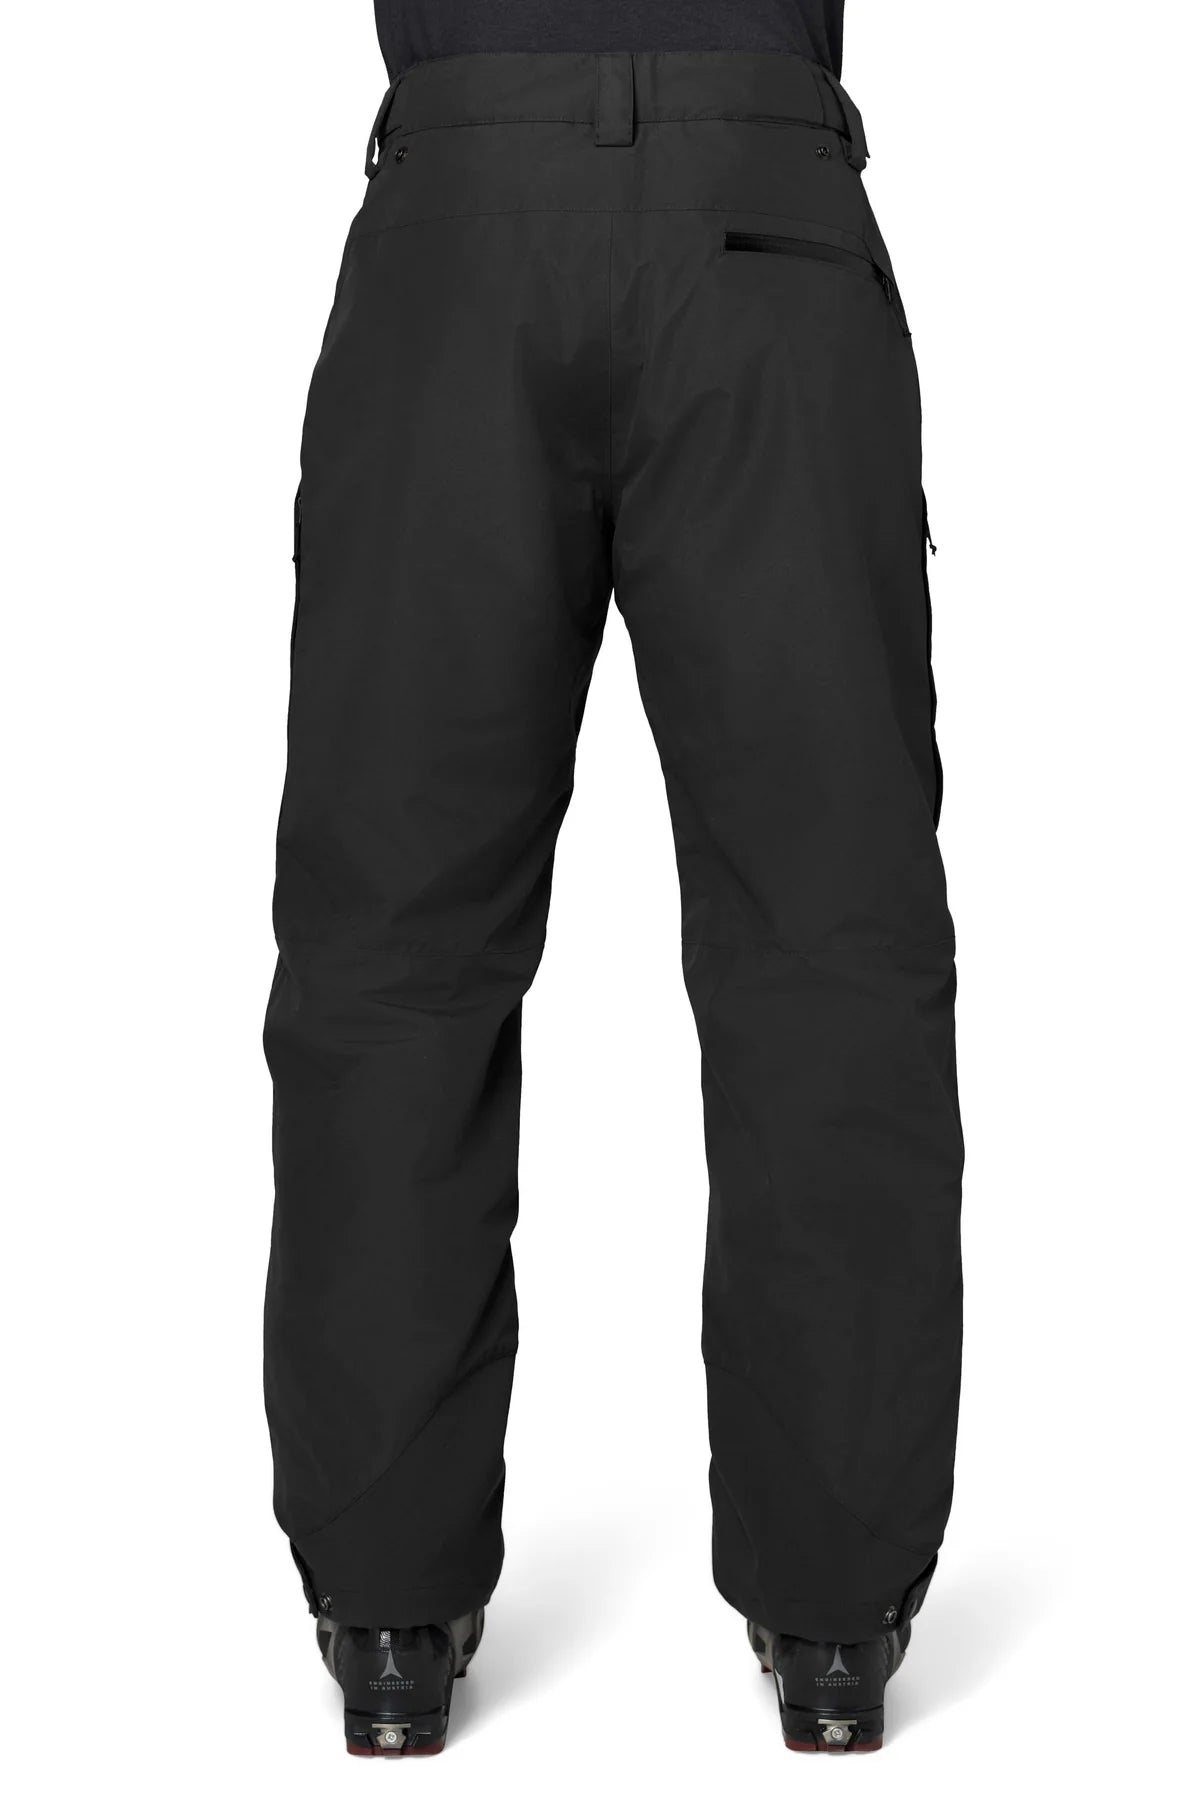 Oakley Granite Rock Ski Pants in Black for Men